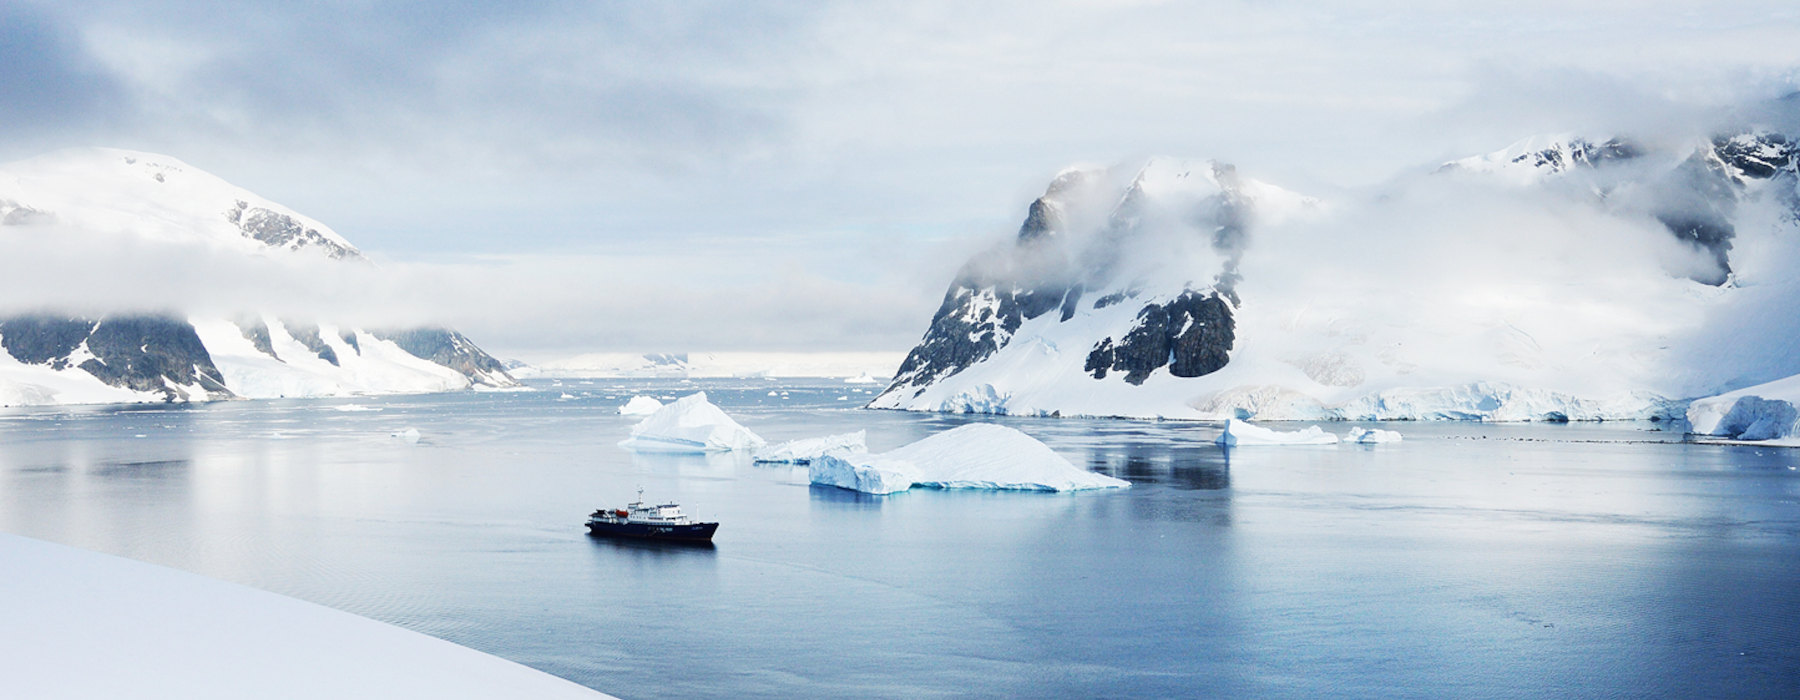 Antarctica<br class="hidden-md hidden-lg" /> Winter Holidays